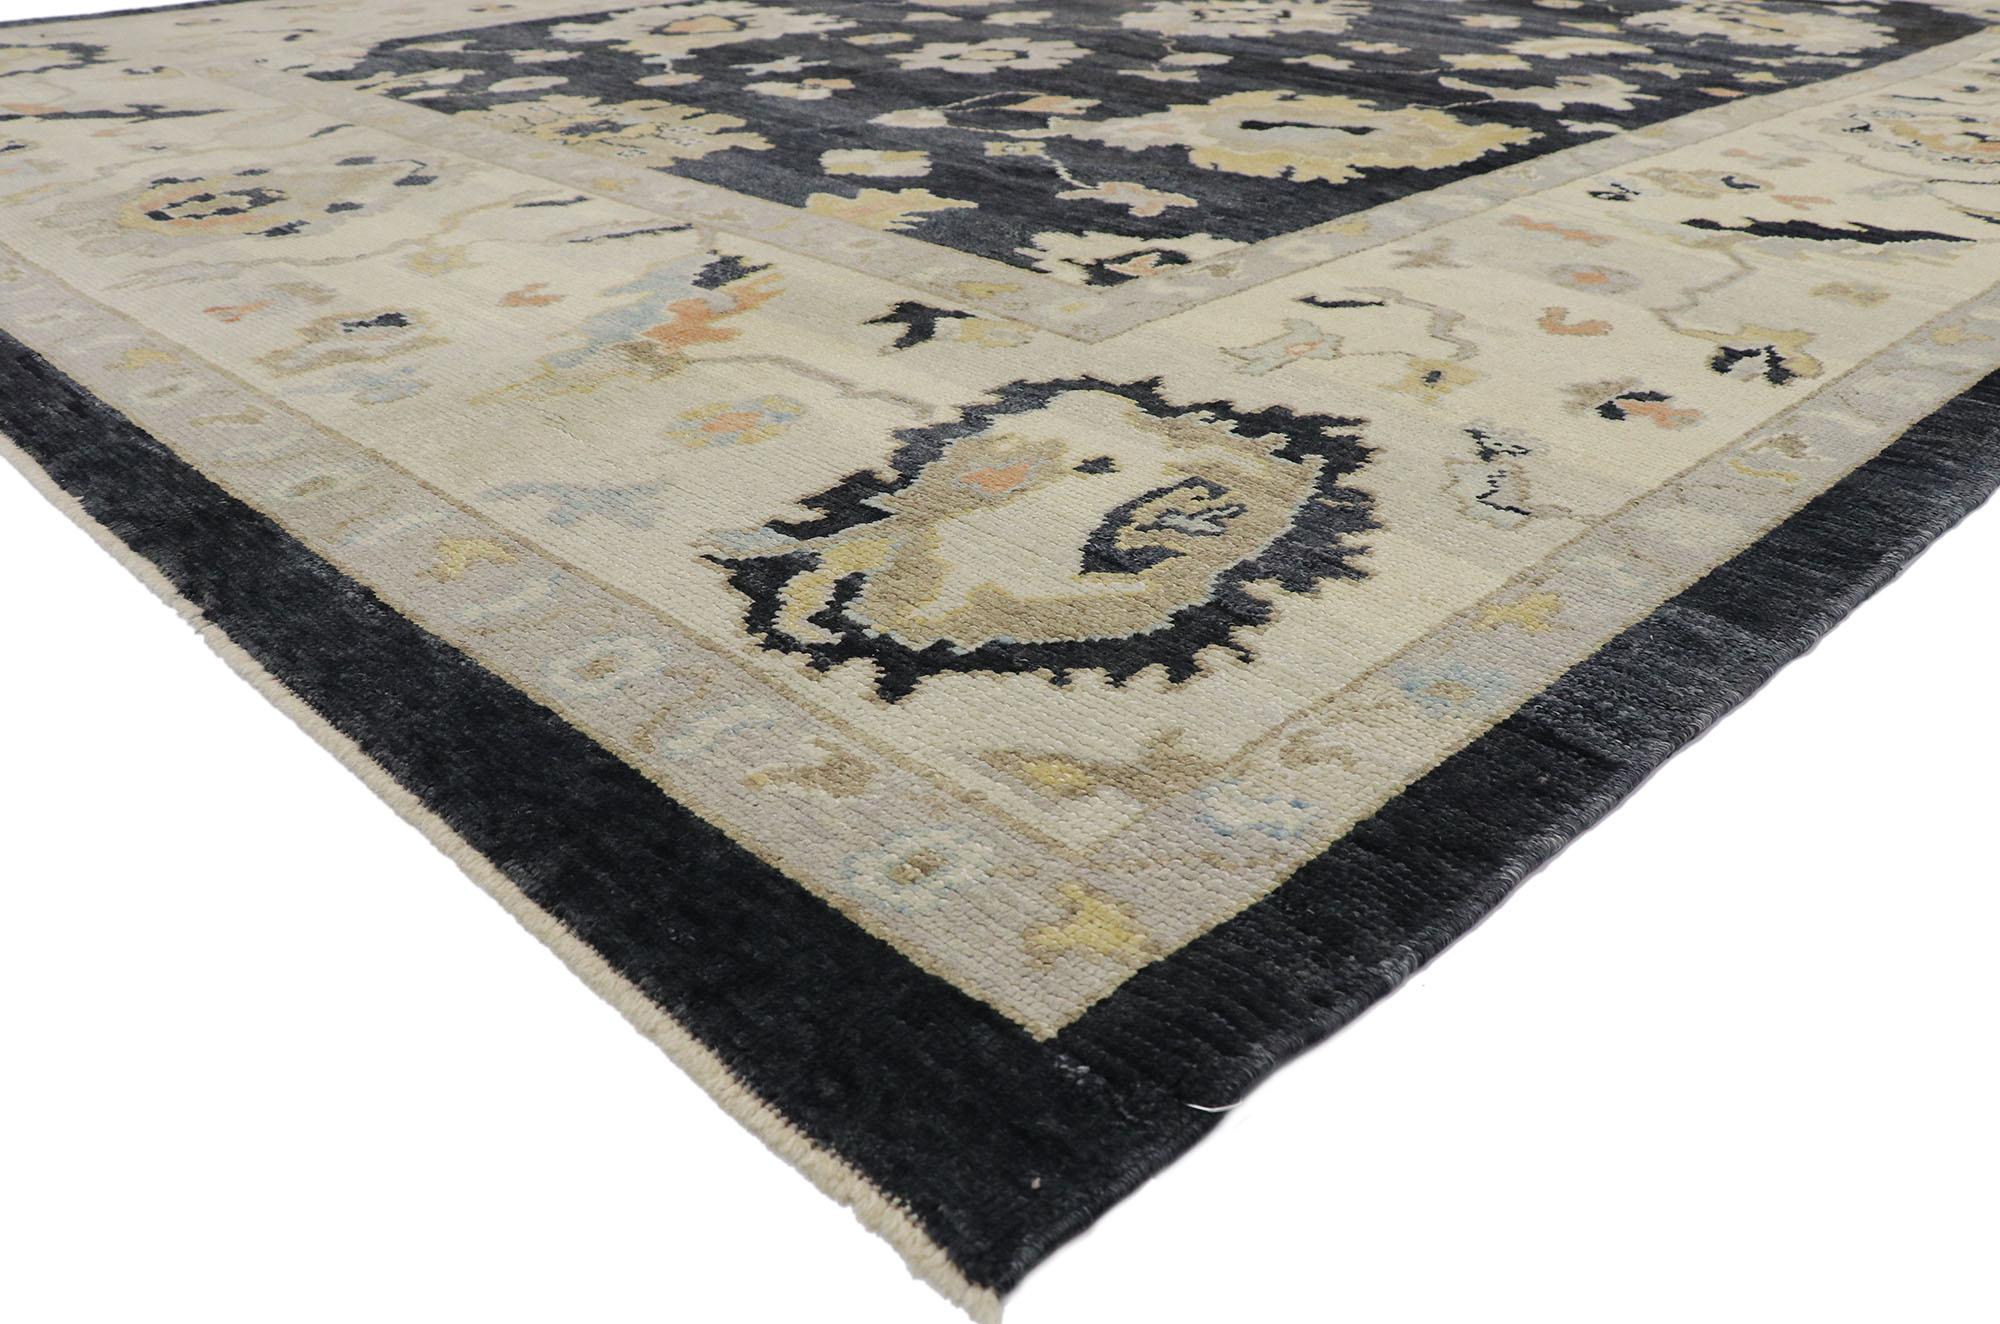 52737 neuer zeitgenössischer schwarzer türkischer Oushak-Teppich mit modernem Stil 11'01 x 14'08. Dieser moderne türkische Oushak-Teppich aus handgeknüpfter Wolle besticht durch seine elegante Raffinesse und seine kunstvollen Details. Das schwarz